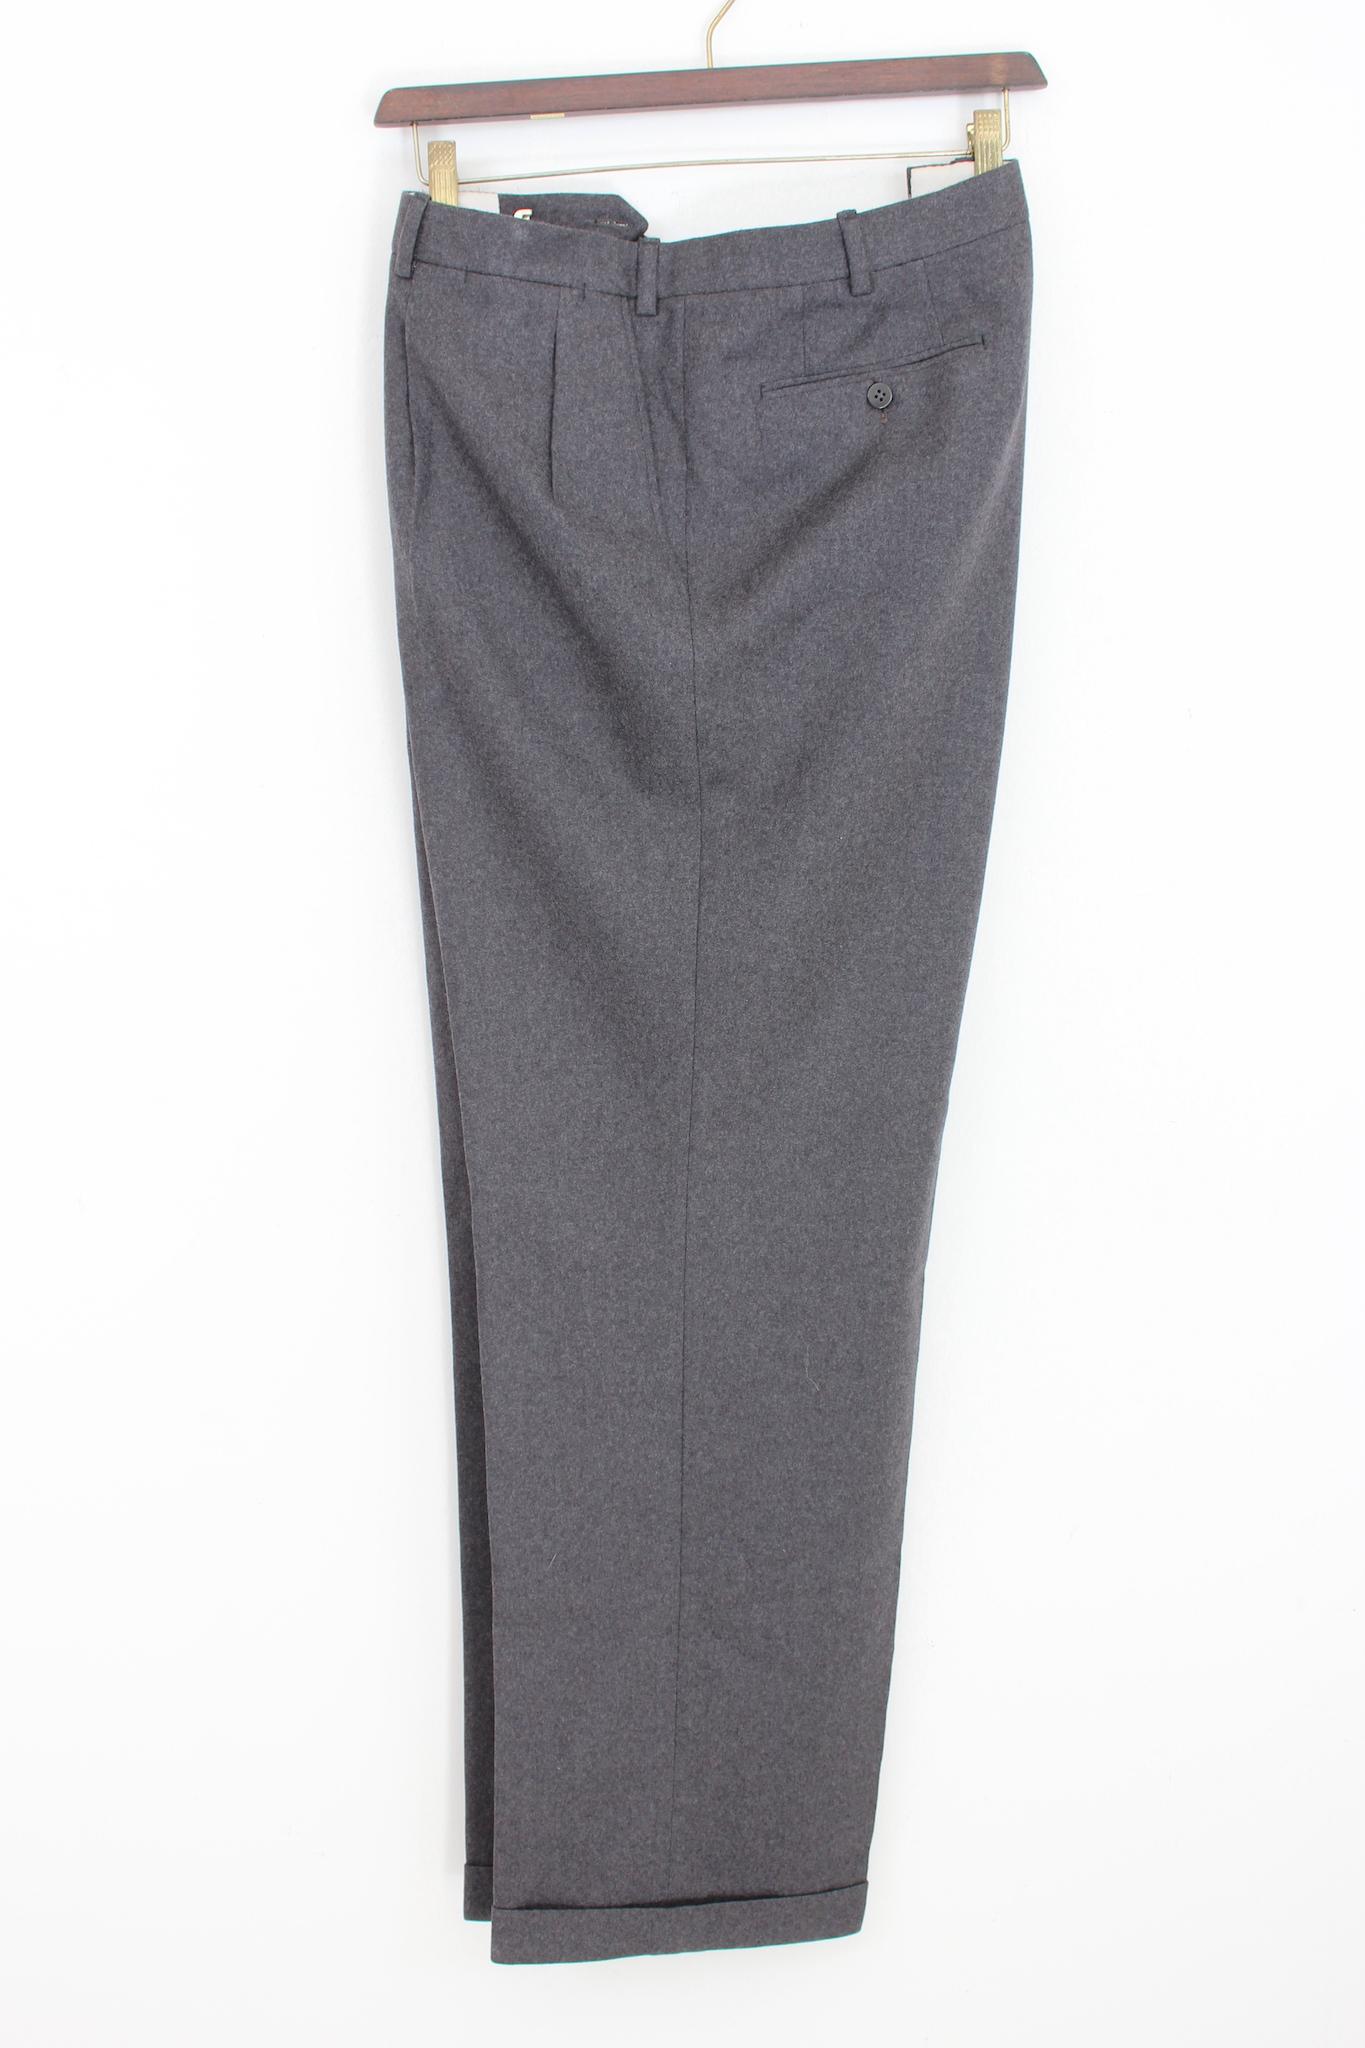 Pantalon élégant vintage des années 90 de Brioni. Modèle droit, couleur grise, 100% laine. Fabriquées en Italie. Neuf sans étiquette, provenant du stock de l'entrepôt.

Taille : 64 It 54 Us 54 Uk

Taille : 55 cm
Longueur : 108 cm
Ourlet : 25 cm